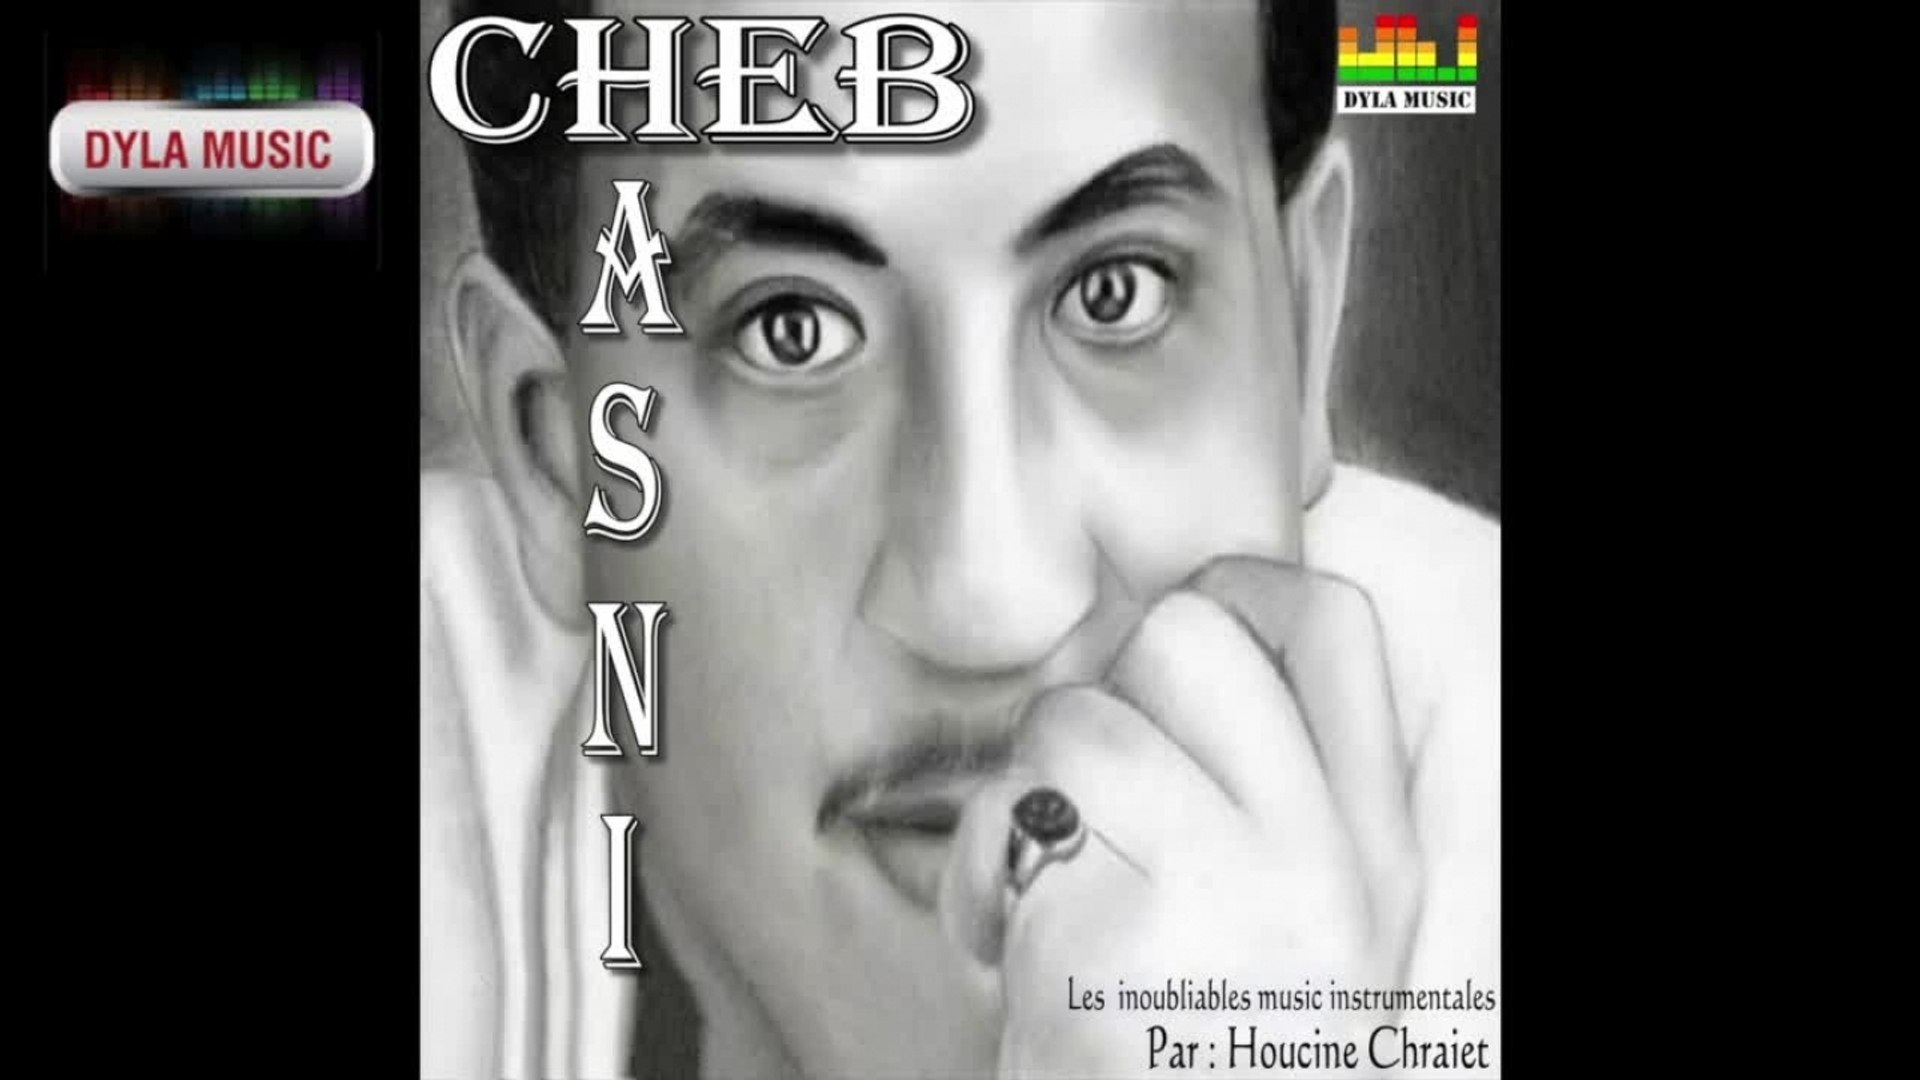 Cheb Hasni - Klamhoum moussiba [Instrumentale] - Dyla Music 2010 © - Vidéo  Dailymotion